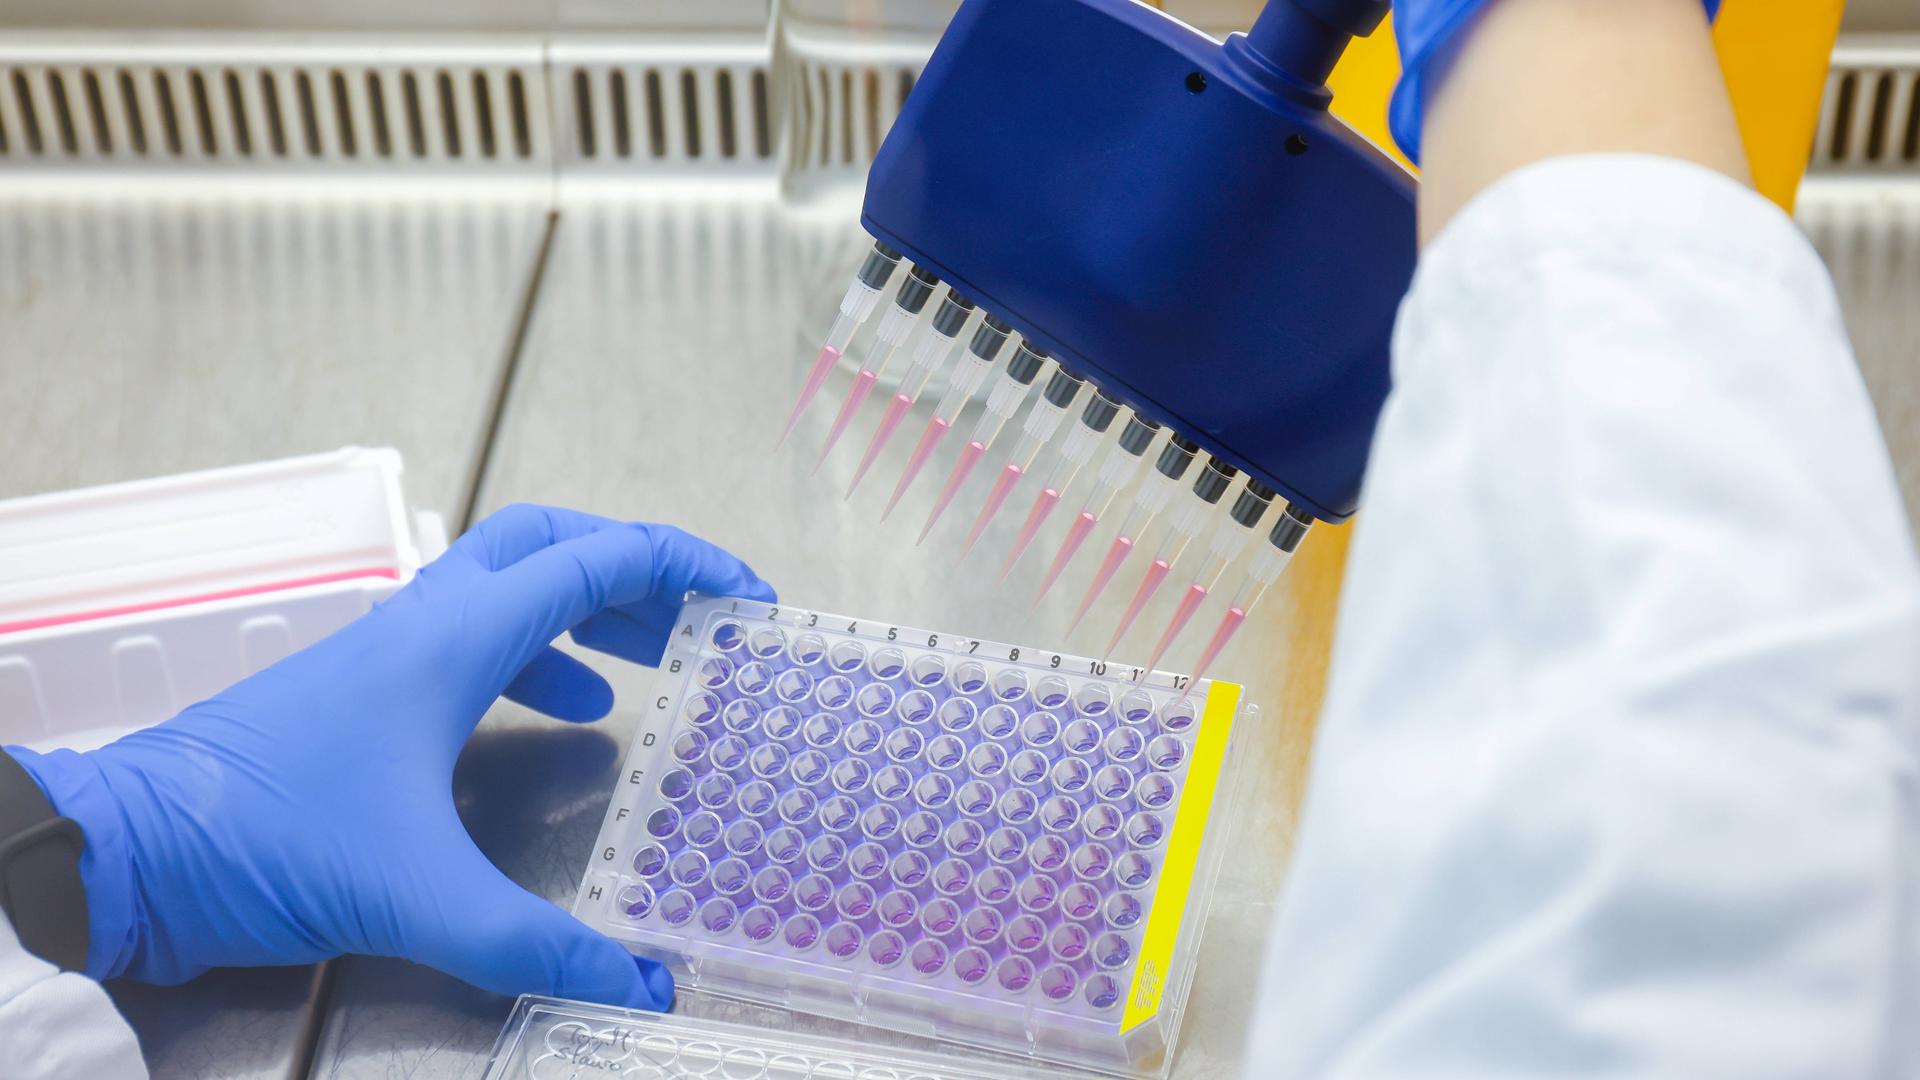 Eine Mitarbeiterin im Bereich der Immunologie und Infektologie am Biomedizinischen Zentrum II des Universitaetsklinikums Bonn untersucht molekulare und funktionelle Eigenschaften von Tumorzellen in Zellkultur.